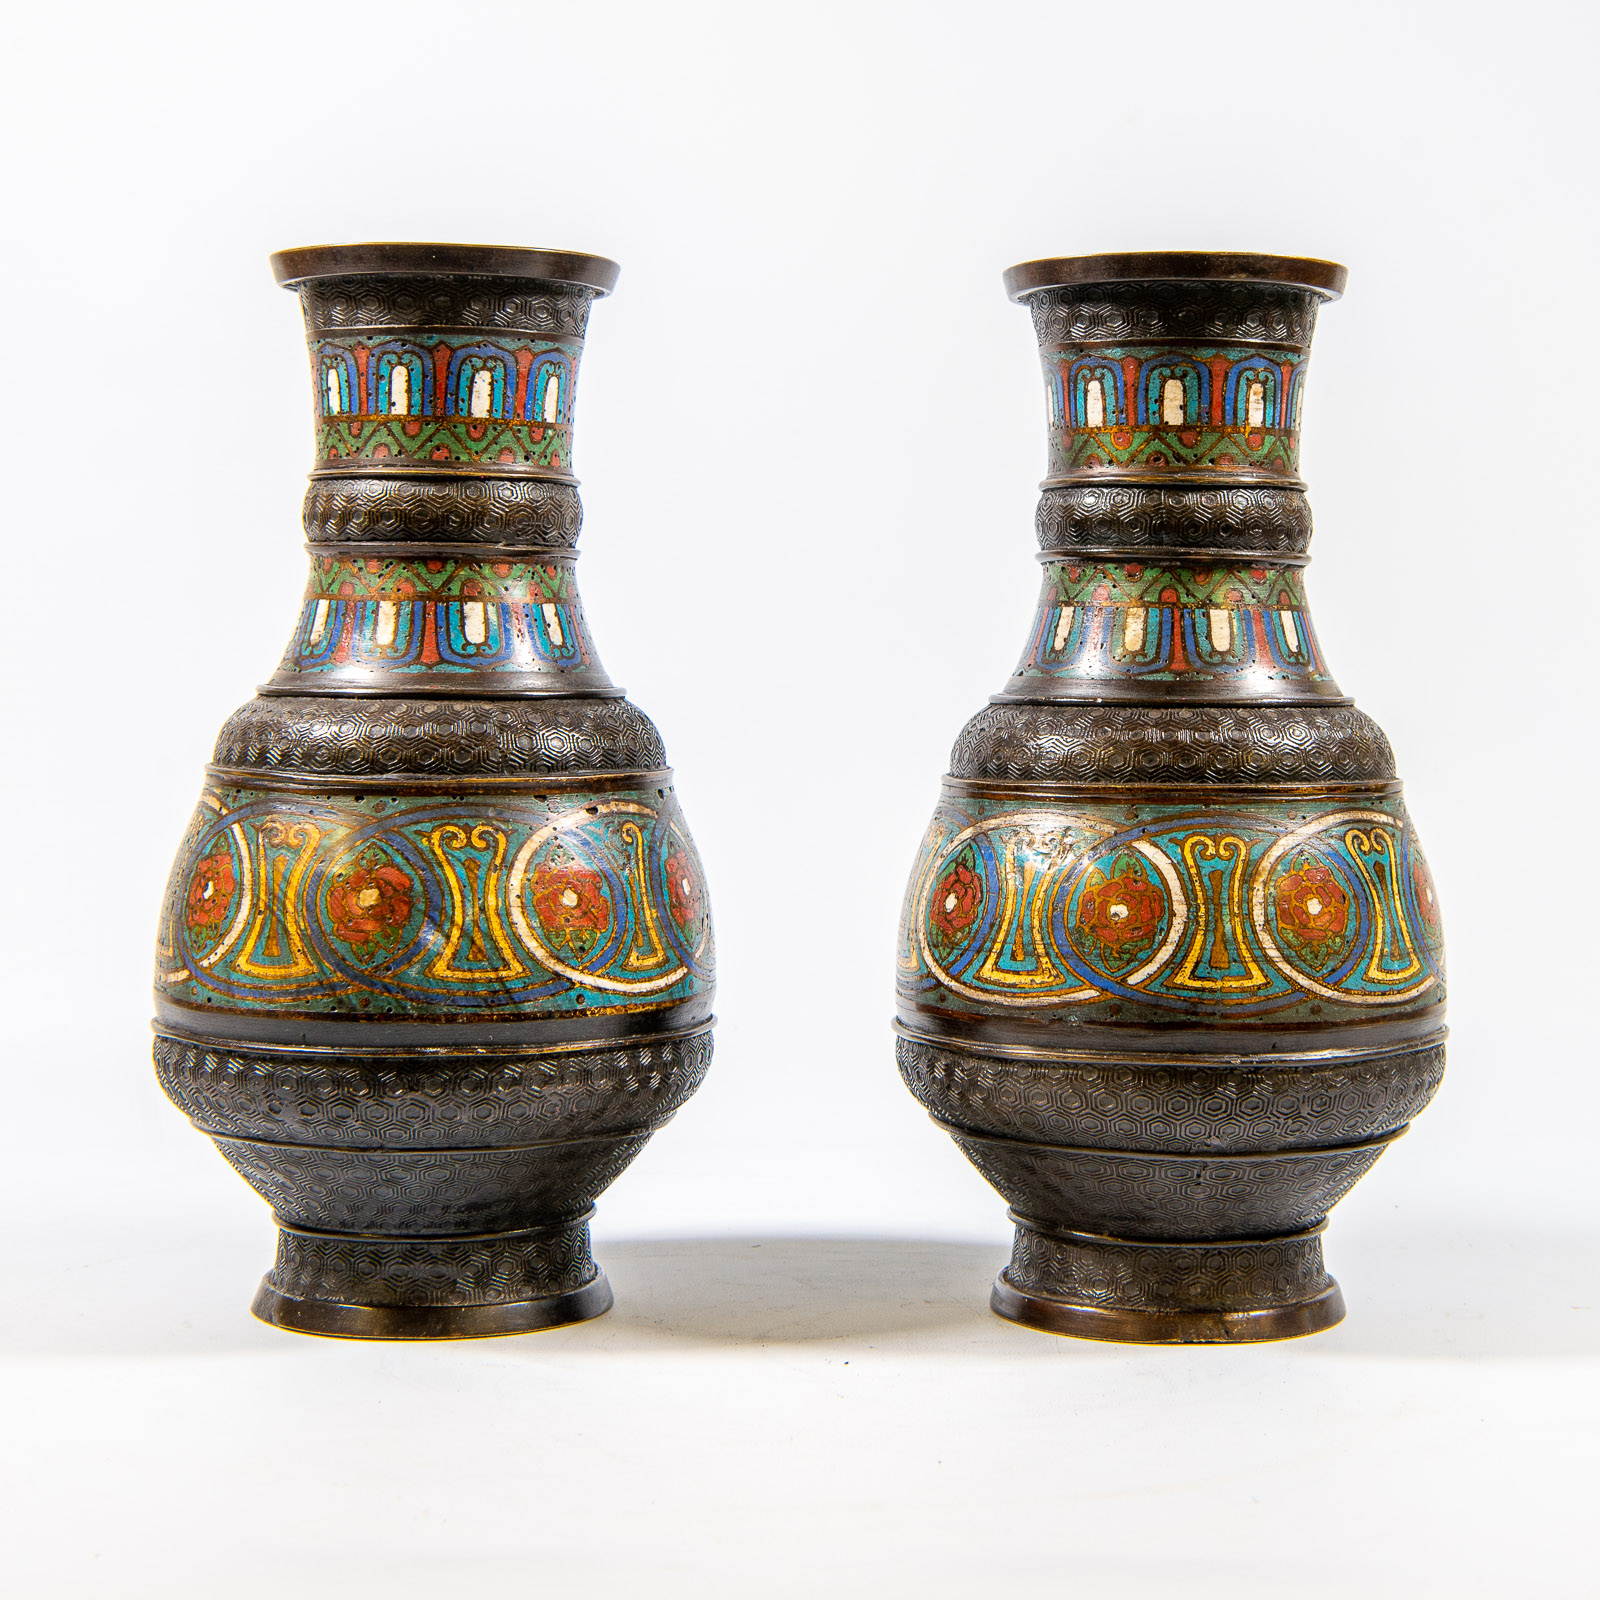  Pair of cloisonné vases